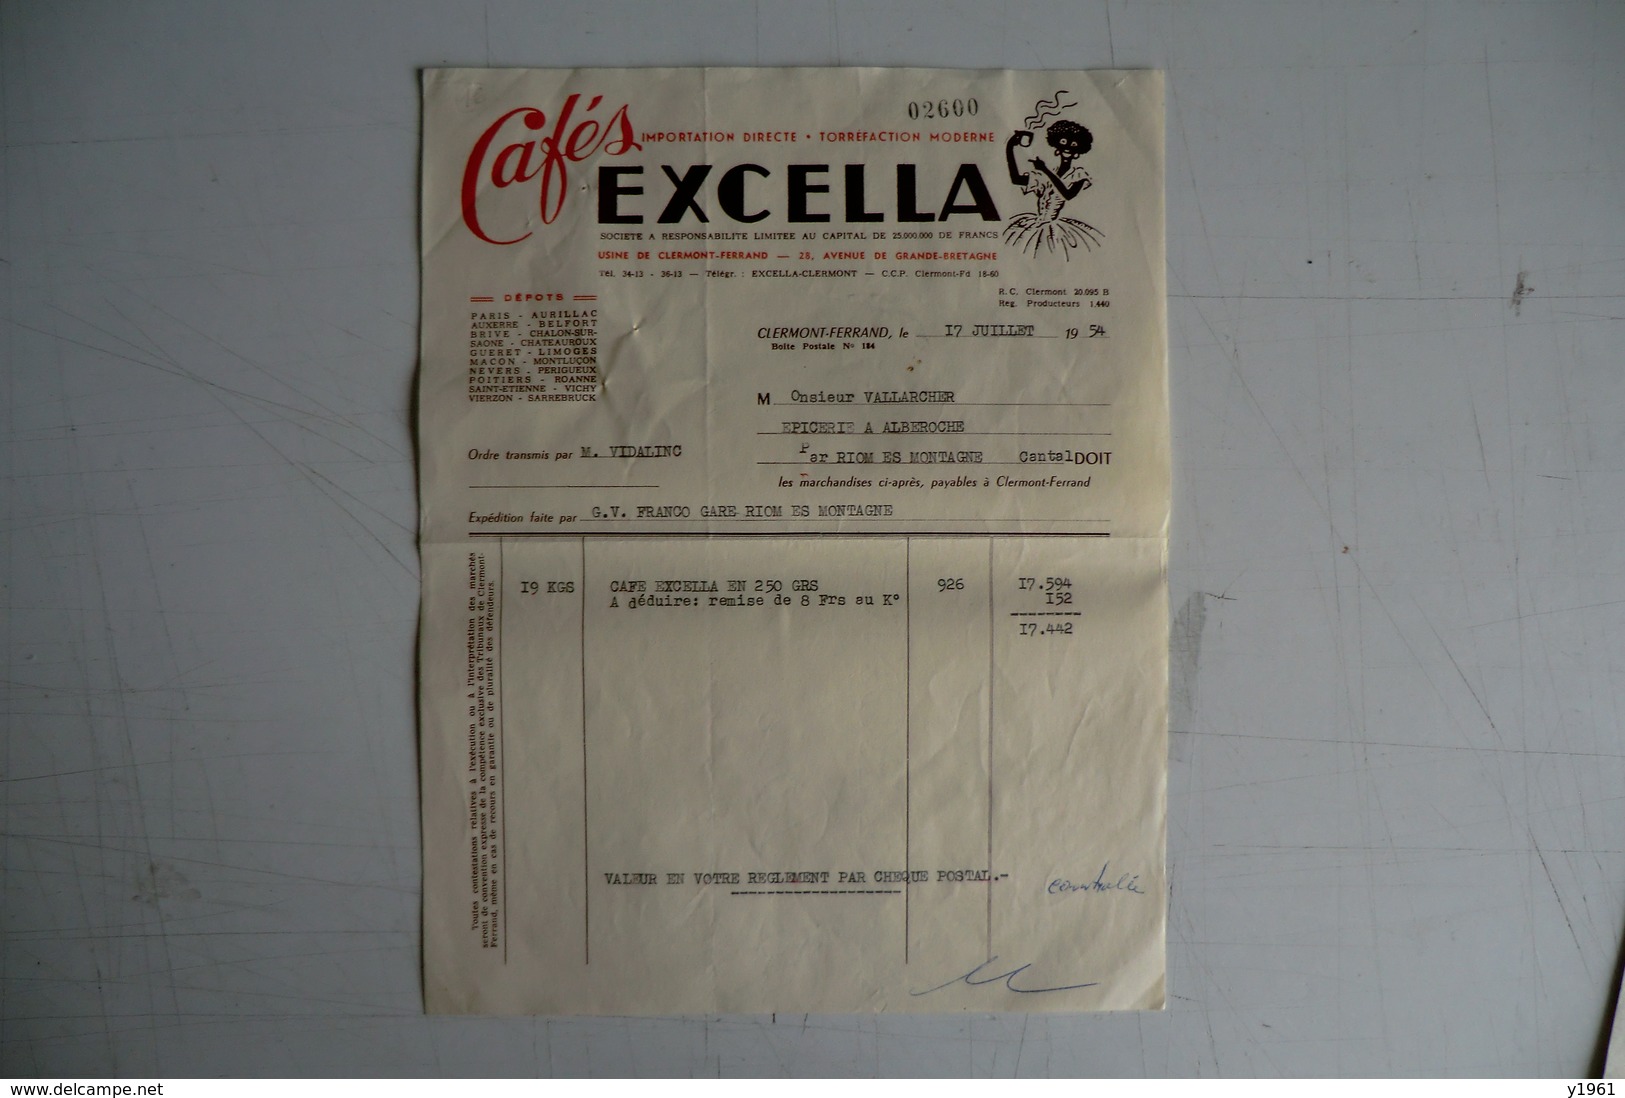 (045) FACTURES DOCUMENTS COMMERCIAUX. 63 PUY DE DOME CLERMONT FERRAND. Cafés EXCELLA. 1954. - Food